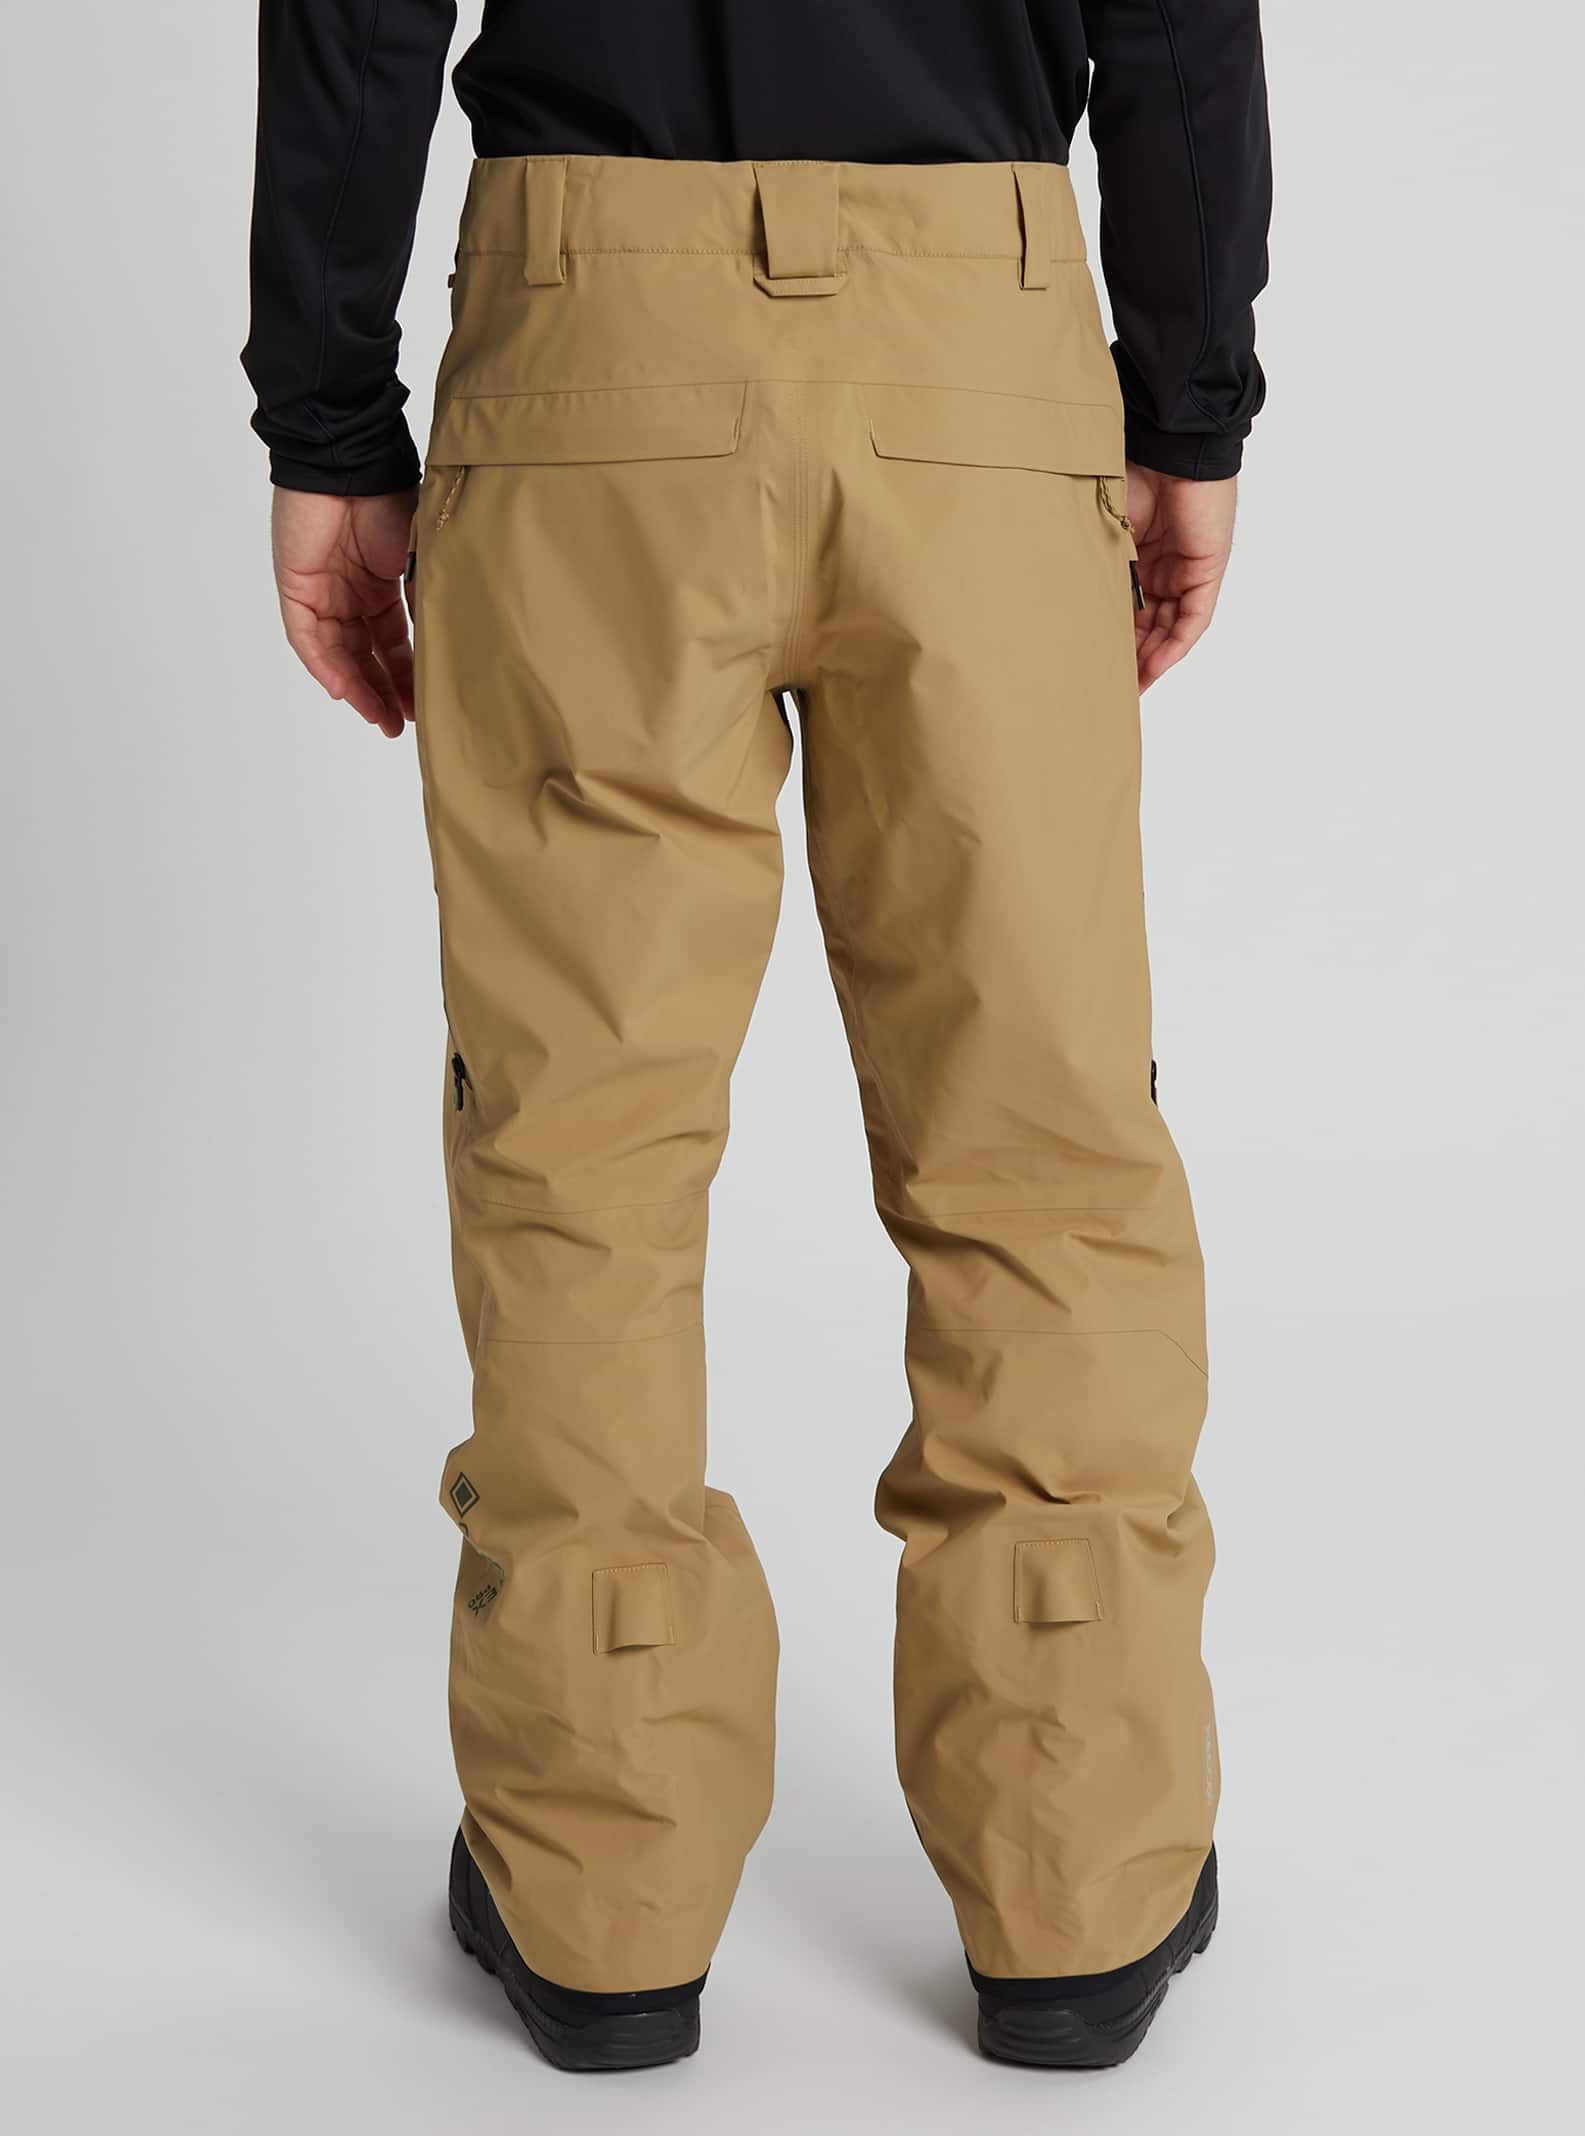 Salopettes et pantalons de neige pour homme | Burton - Planches à neige CA